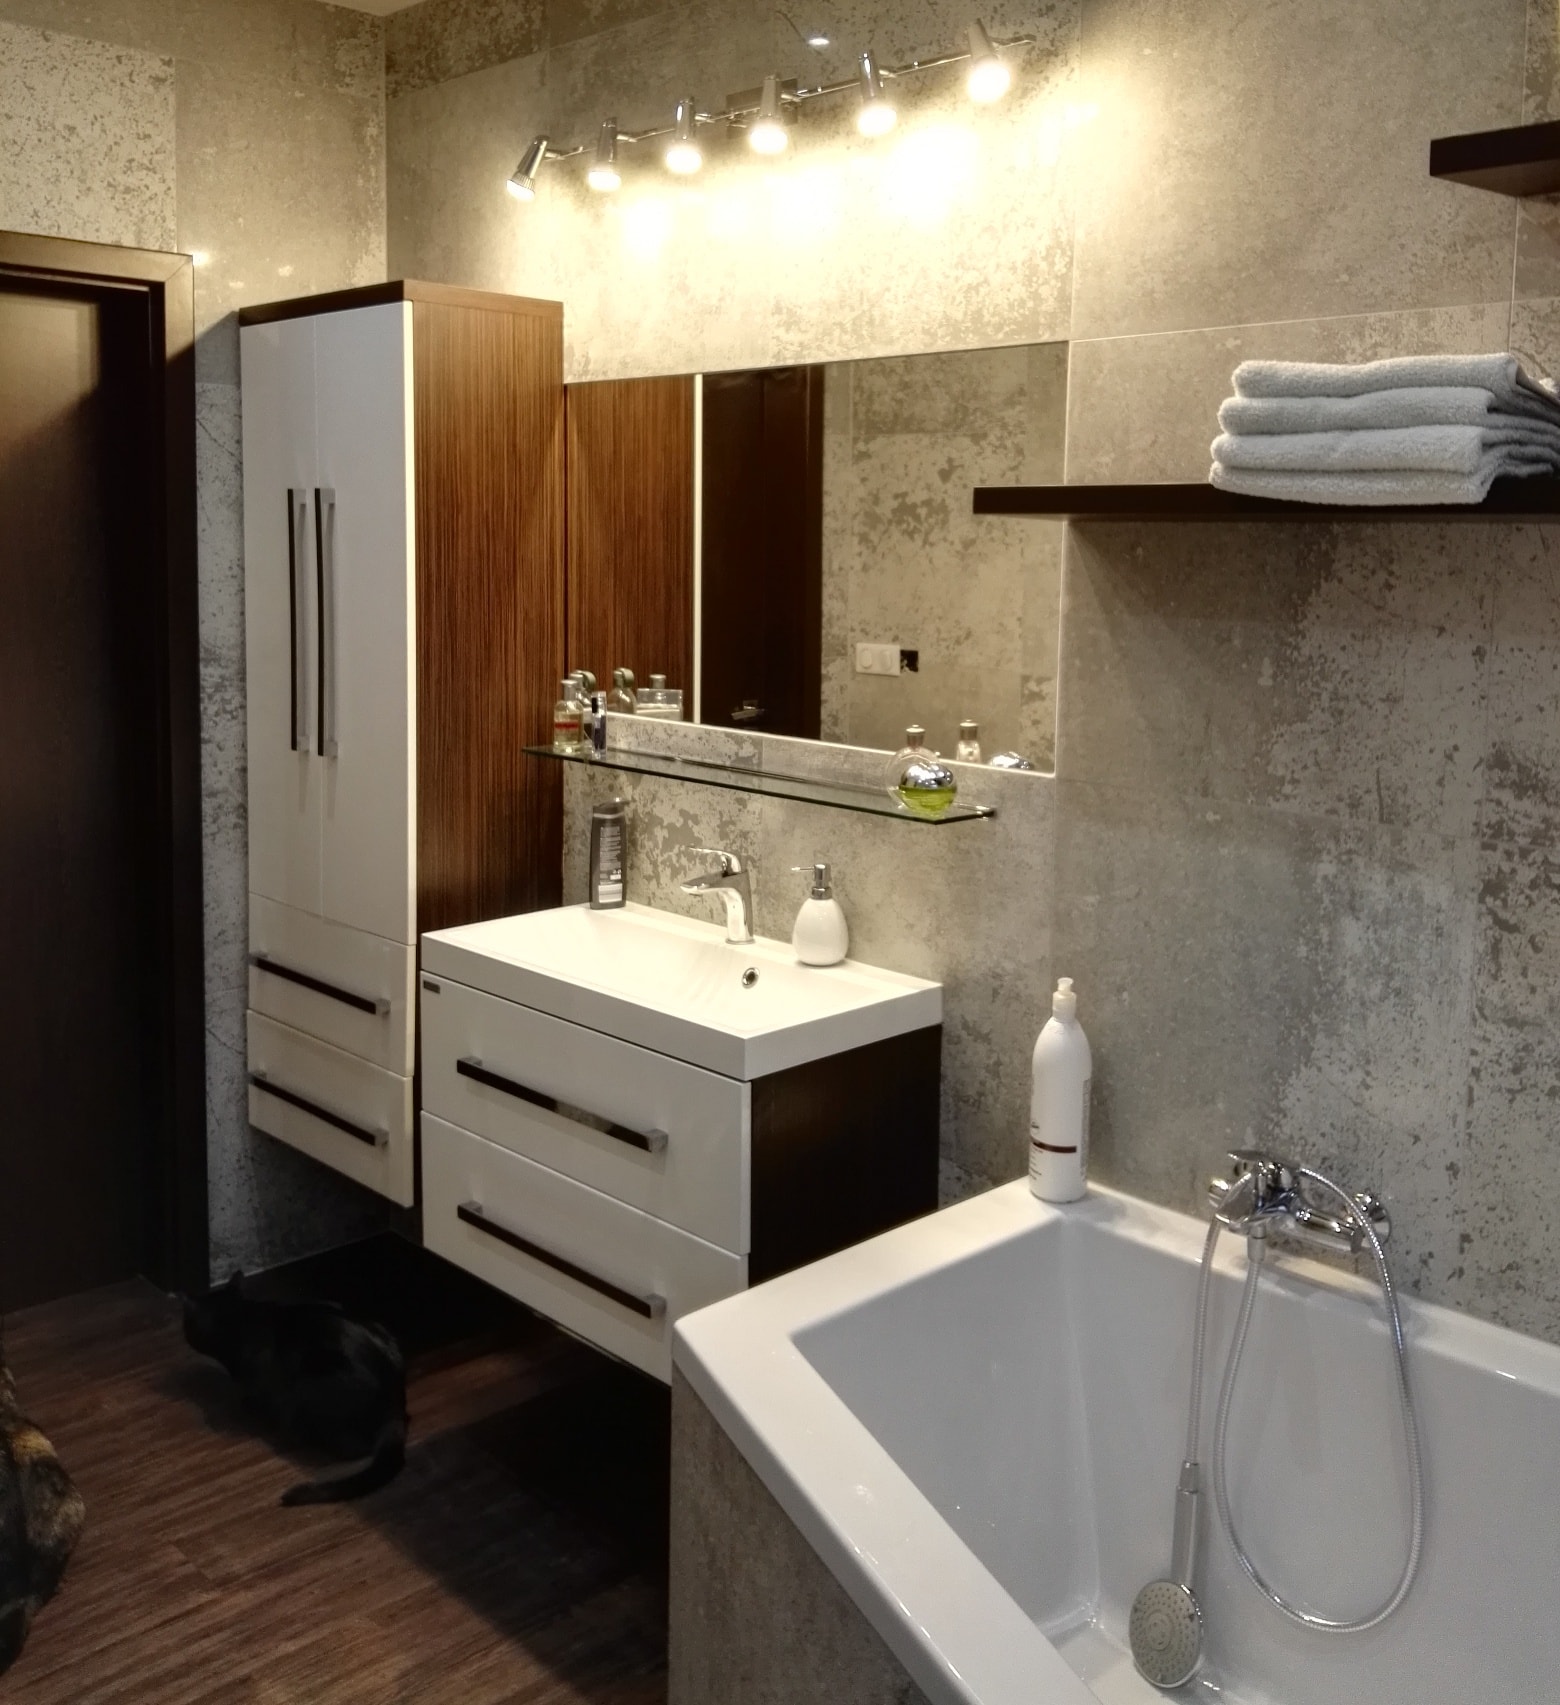 velkoformátové obklady a dlažba Beton v malé koupelně